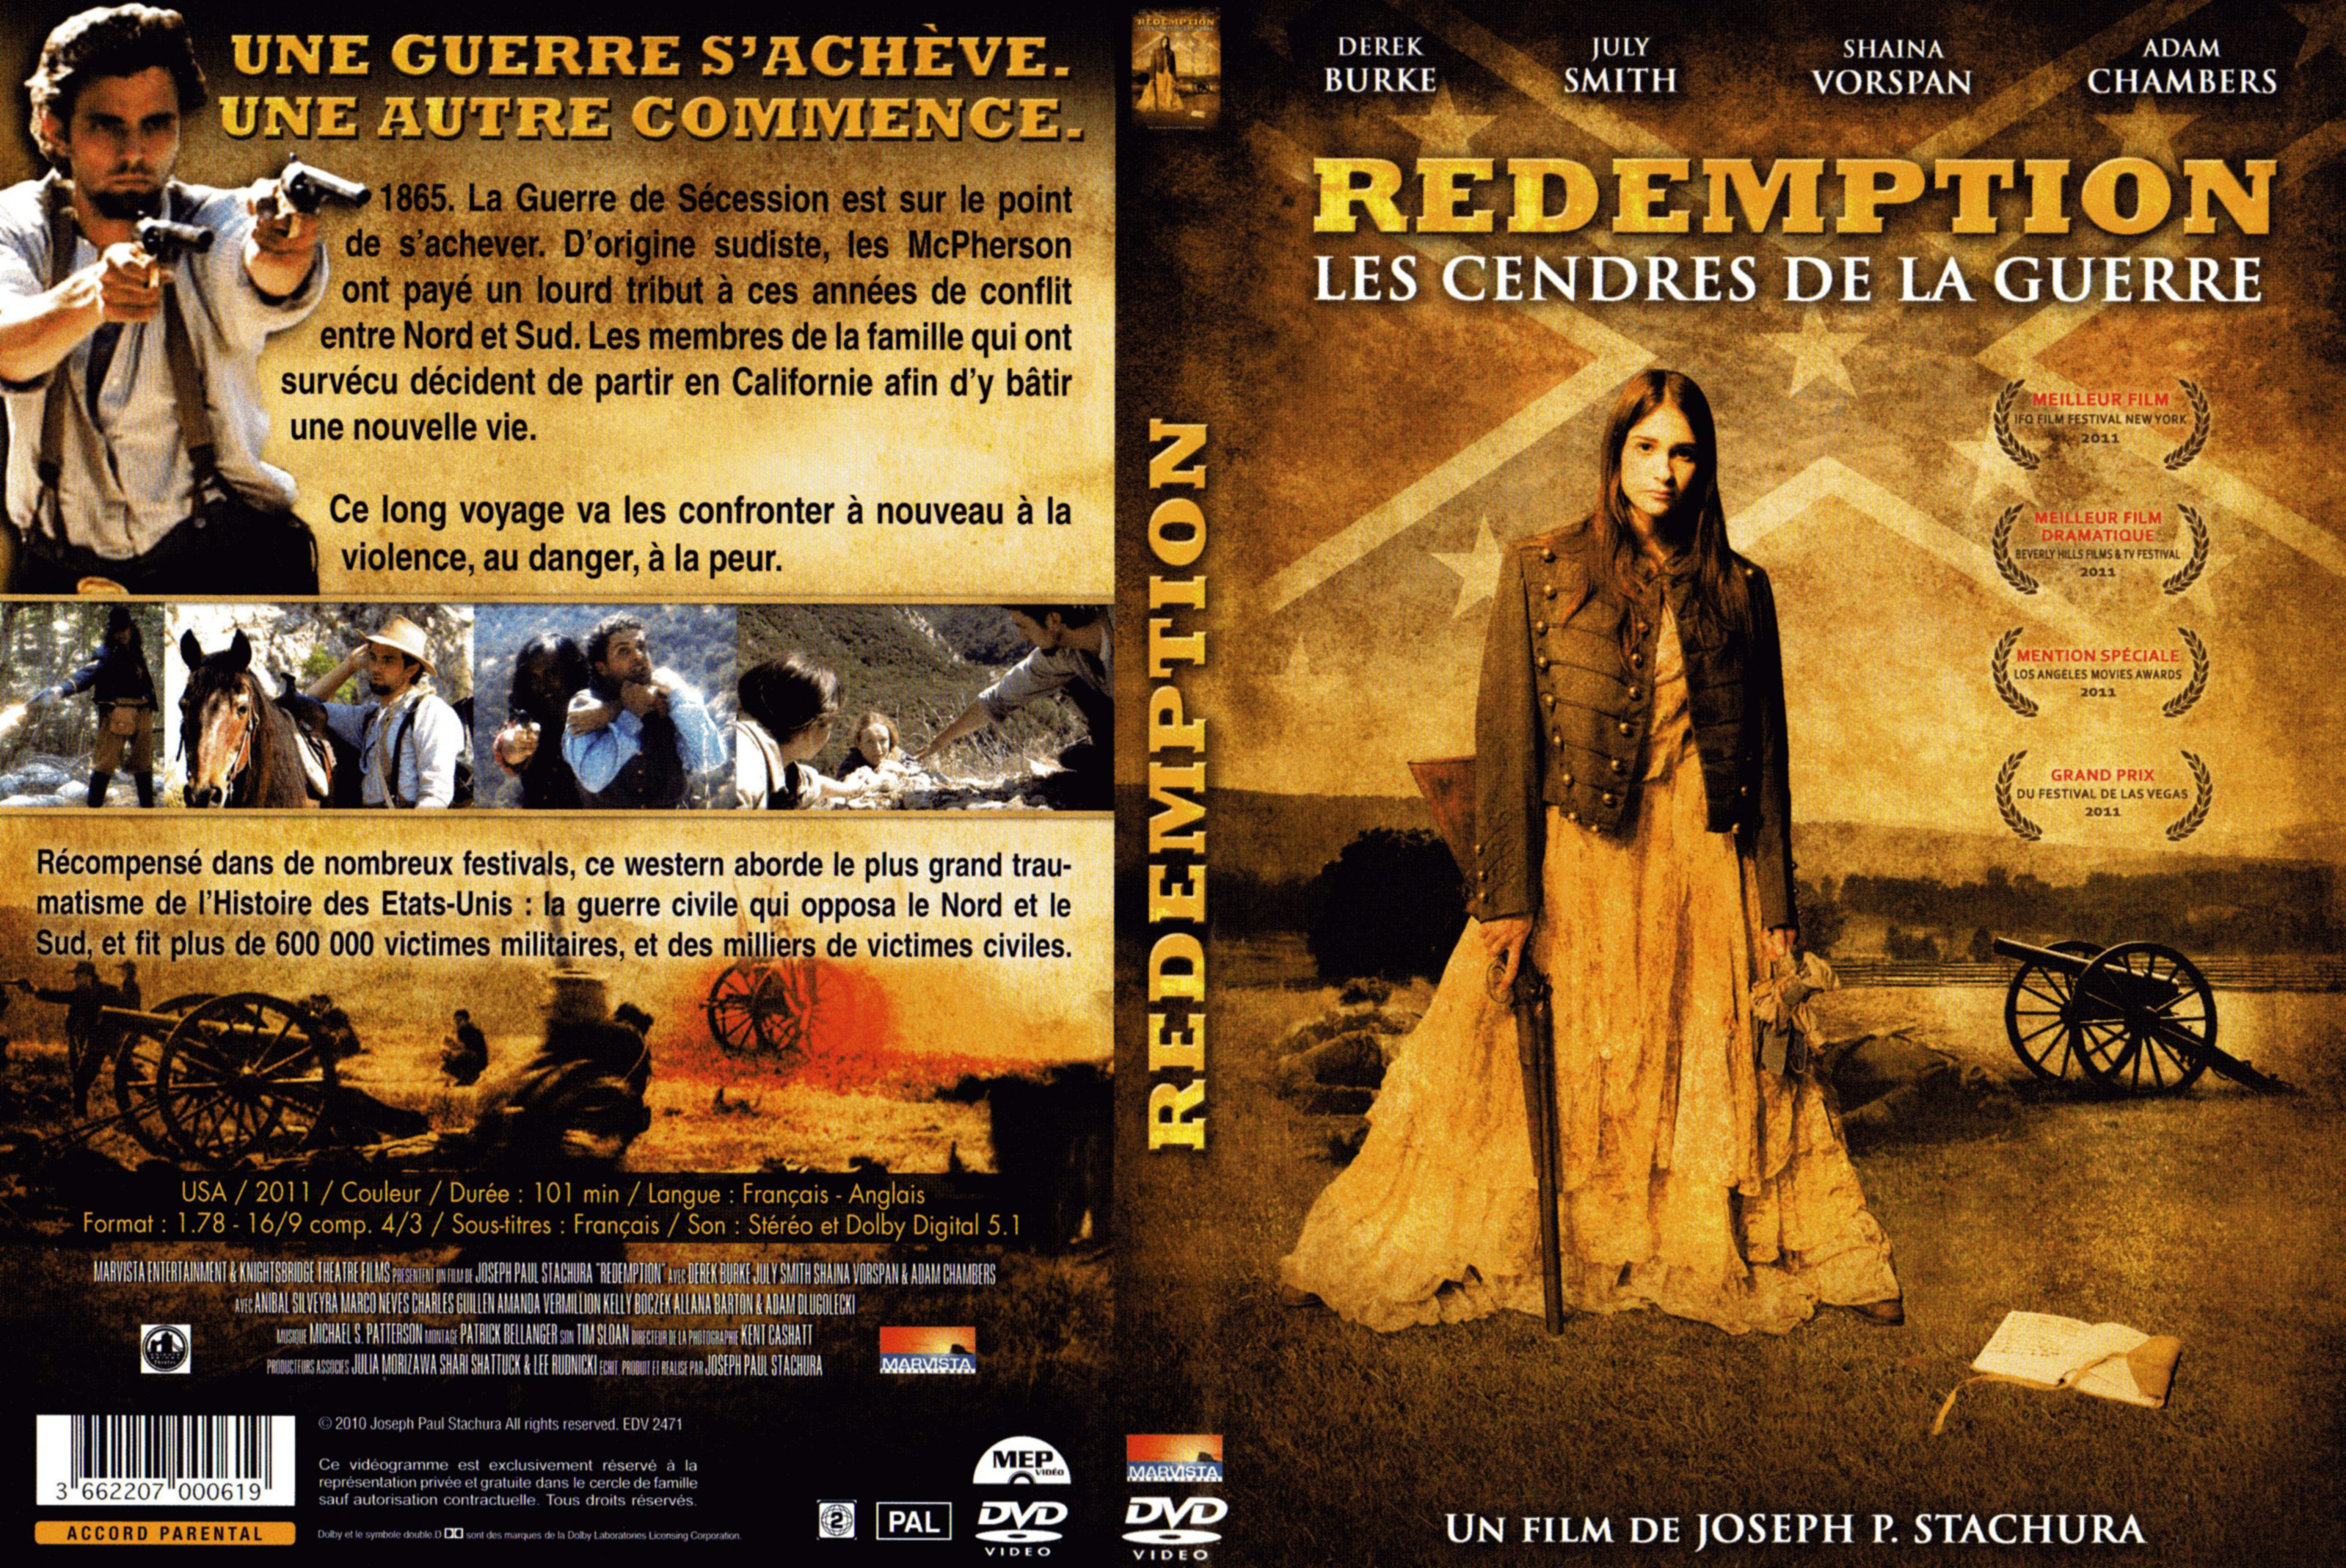 Jaquette DVD Redemption les cendres de la guerre